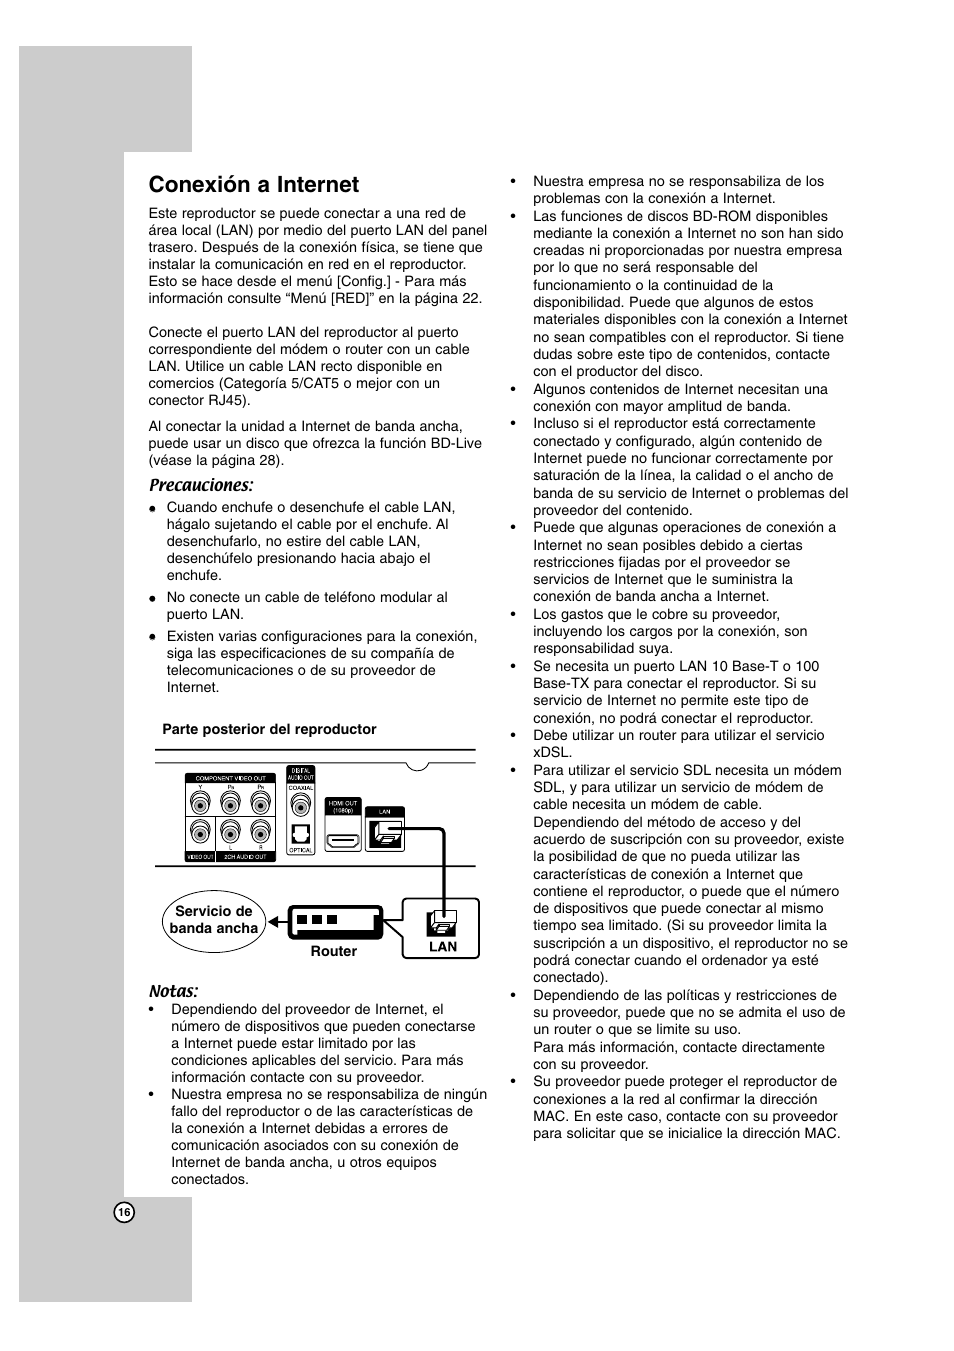 Conexión a internet | LG BD300 Manual del usuario | Página 16 / 40